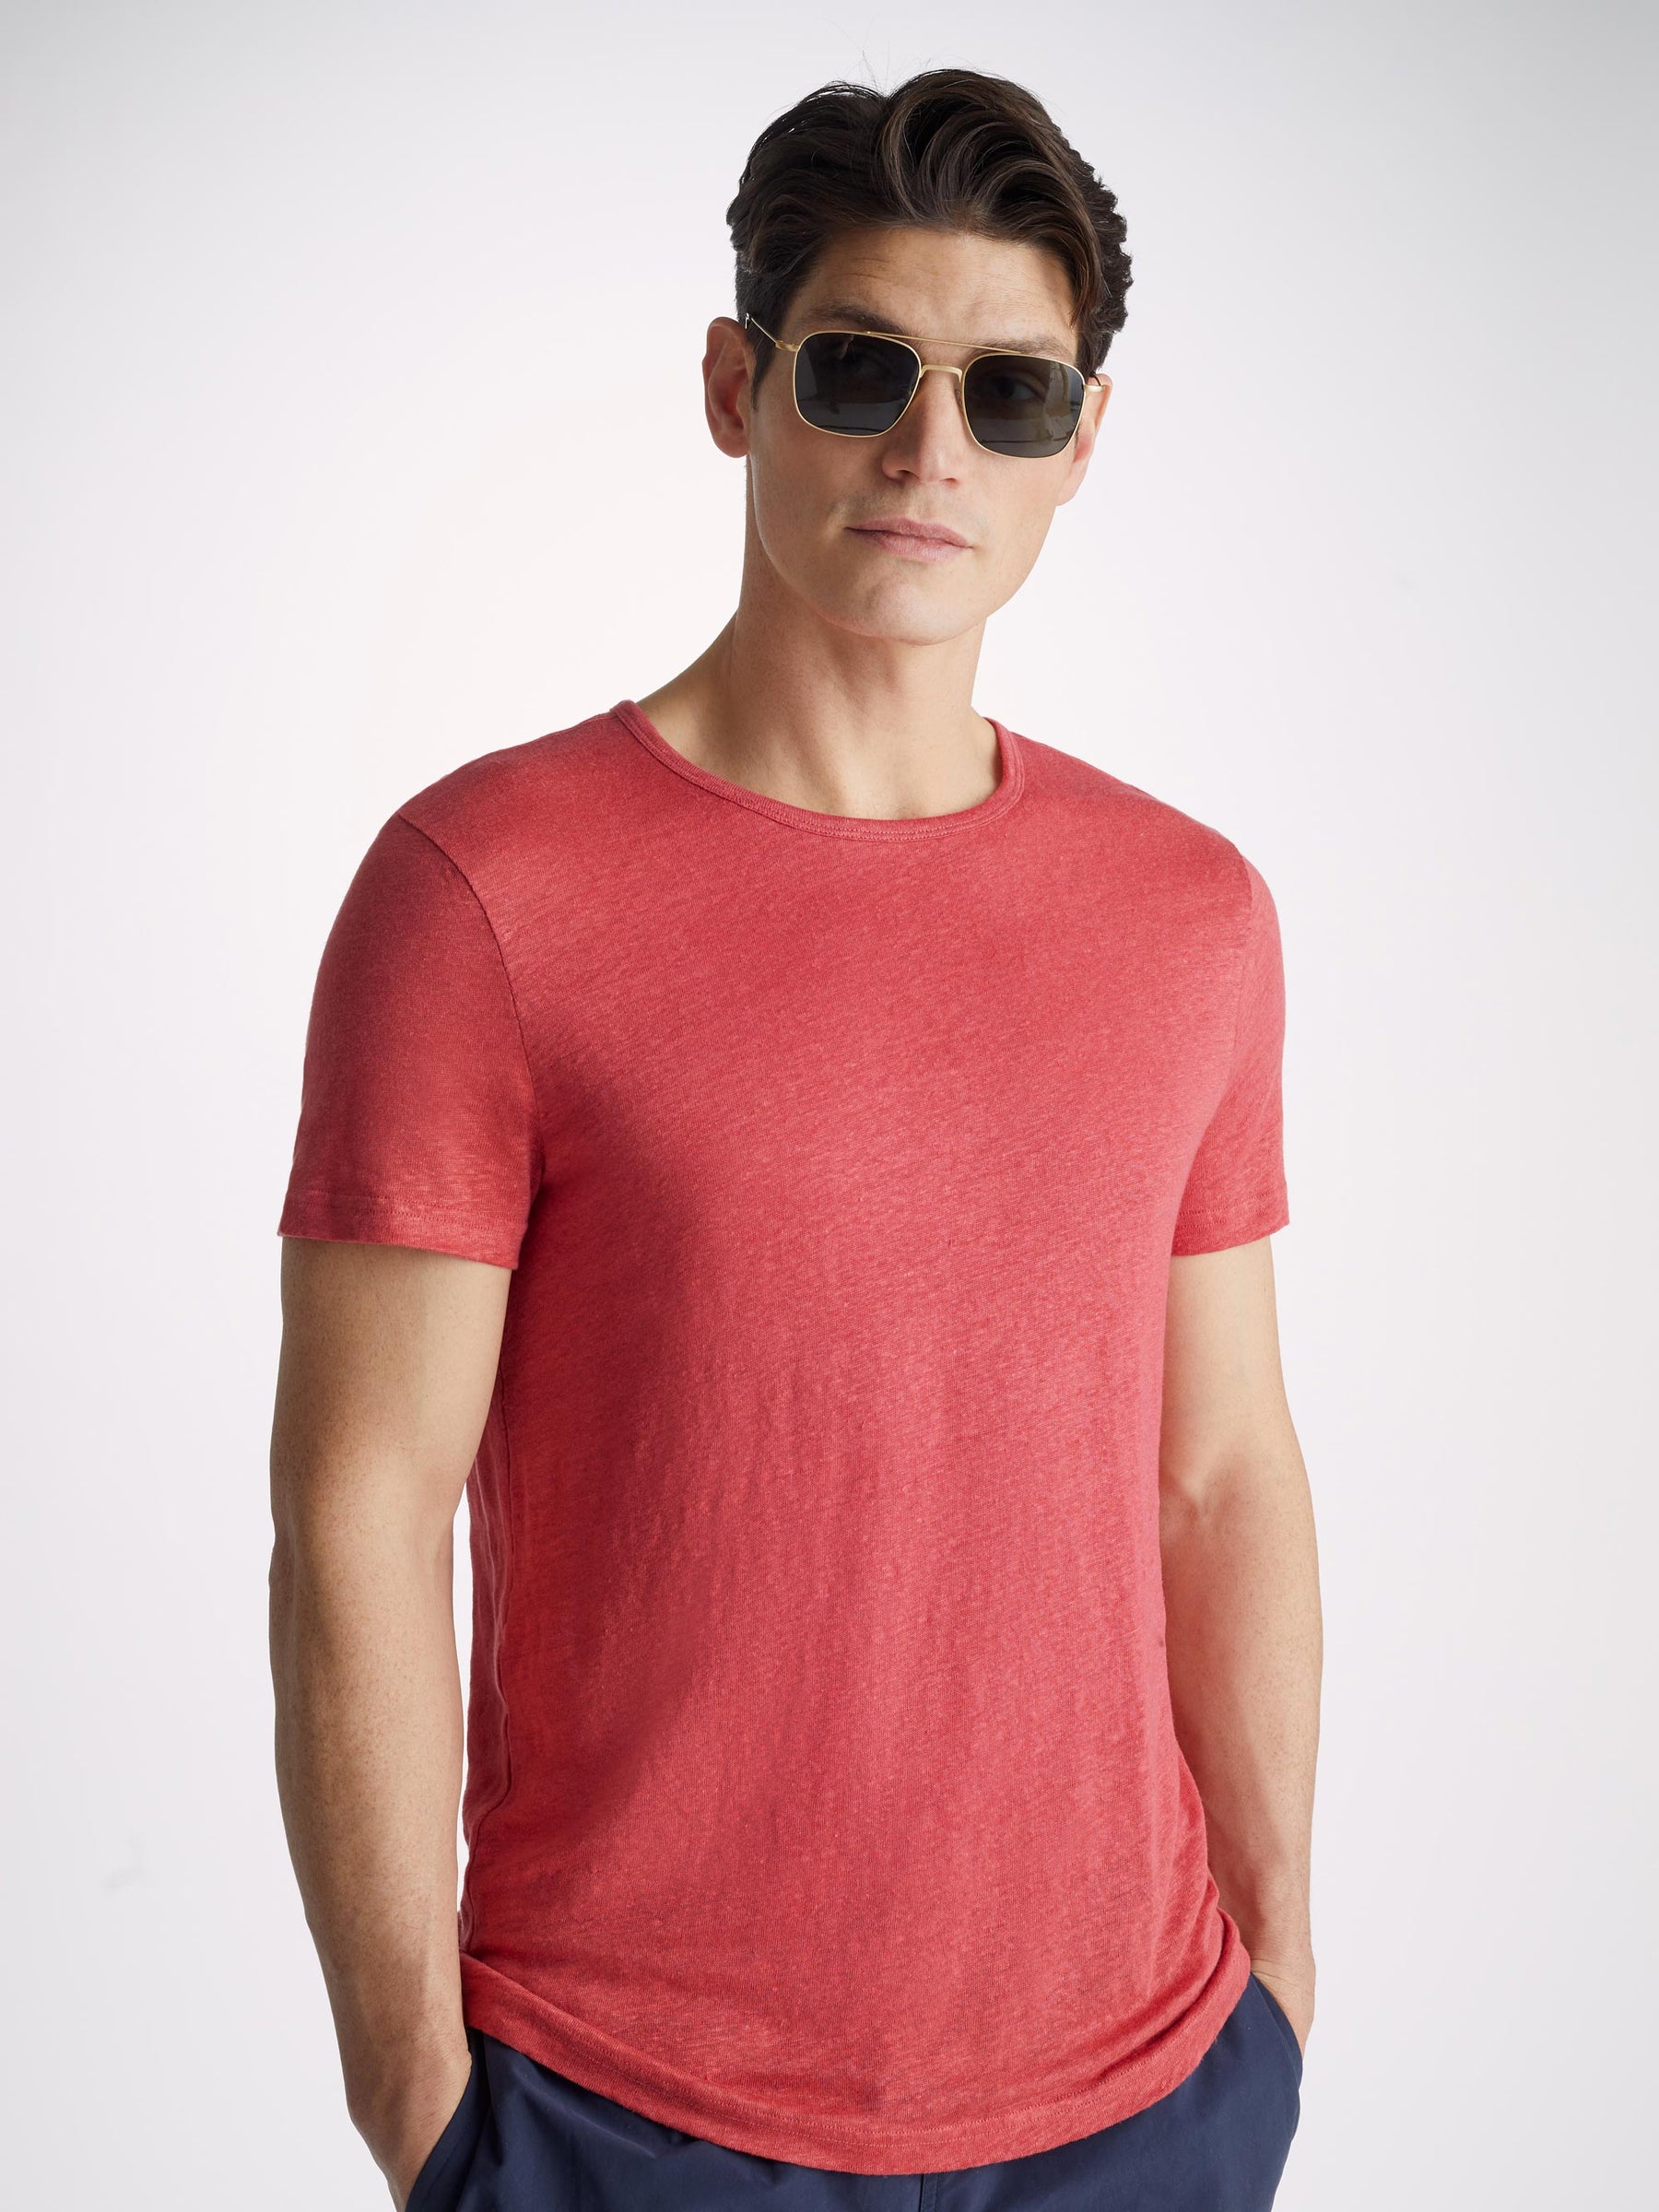 Men's T-Shirt Jordan Linen Soft Red